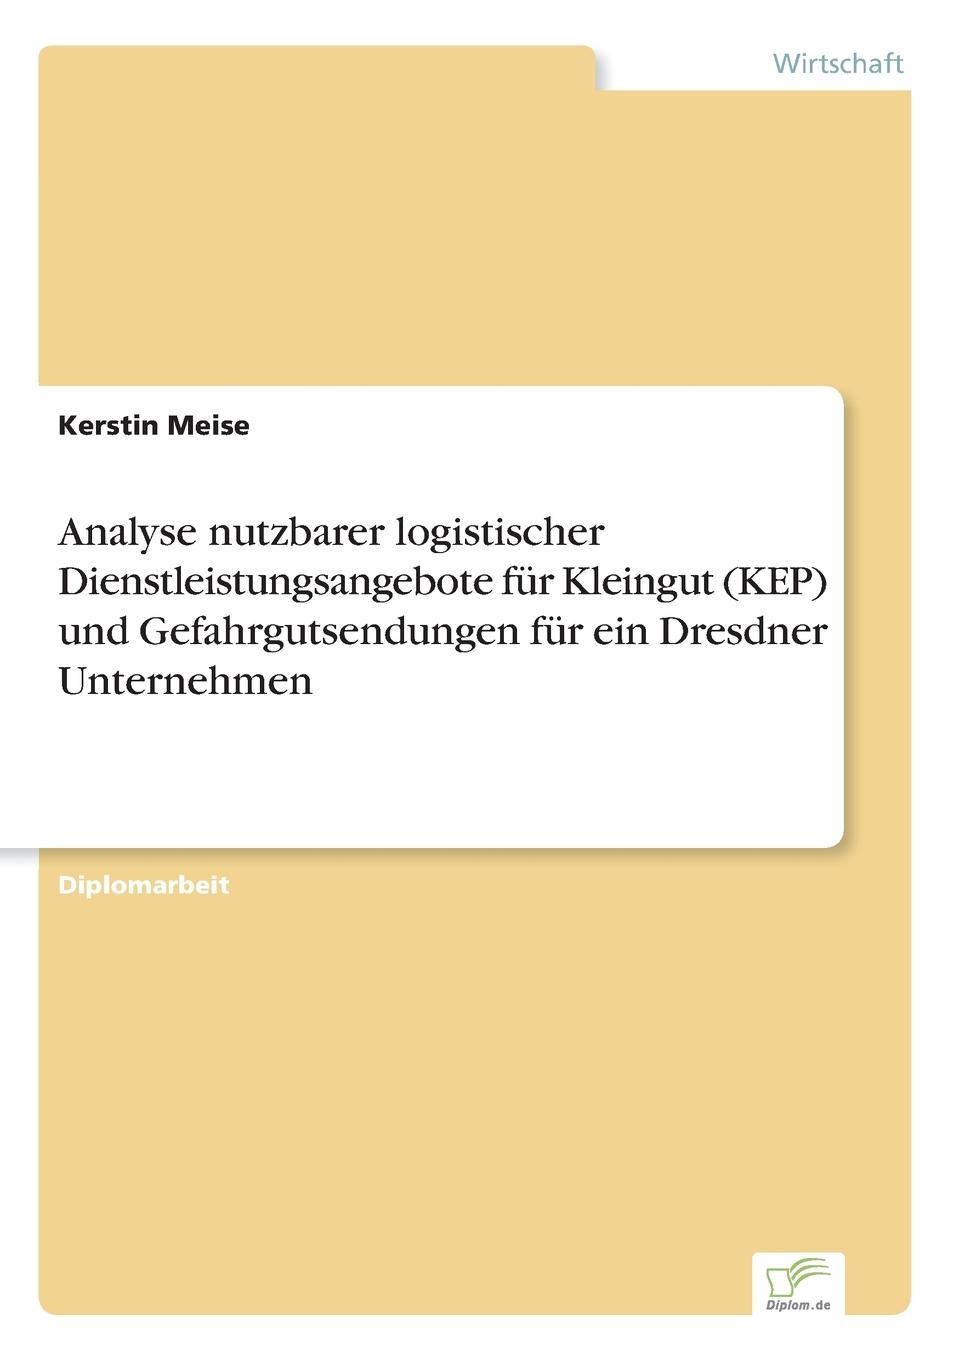 фото Analyse nutzbarer logistischer Dienstleistungsangebote fur Kleingut (KEP) und Gefahrgutsendungen fur ein Dresdner Unternehmen